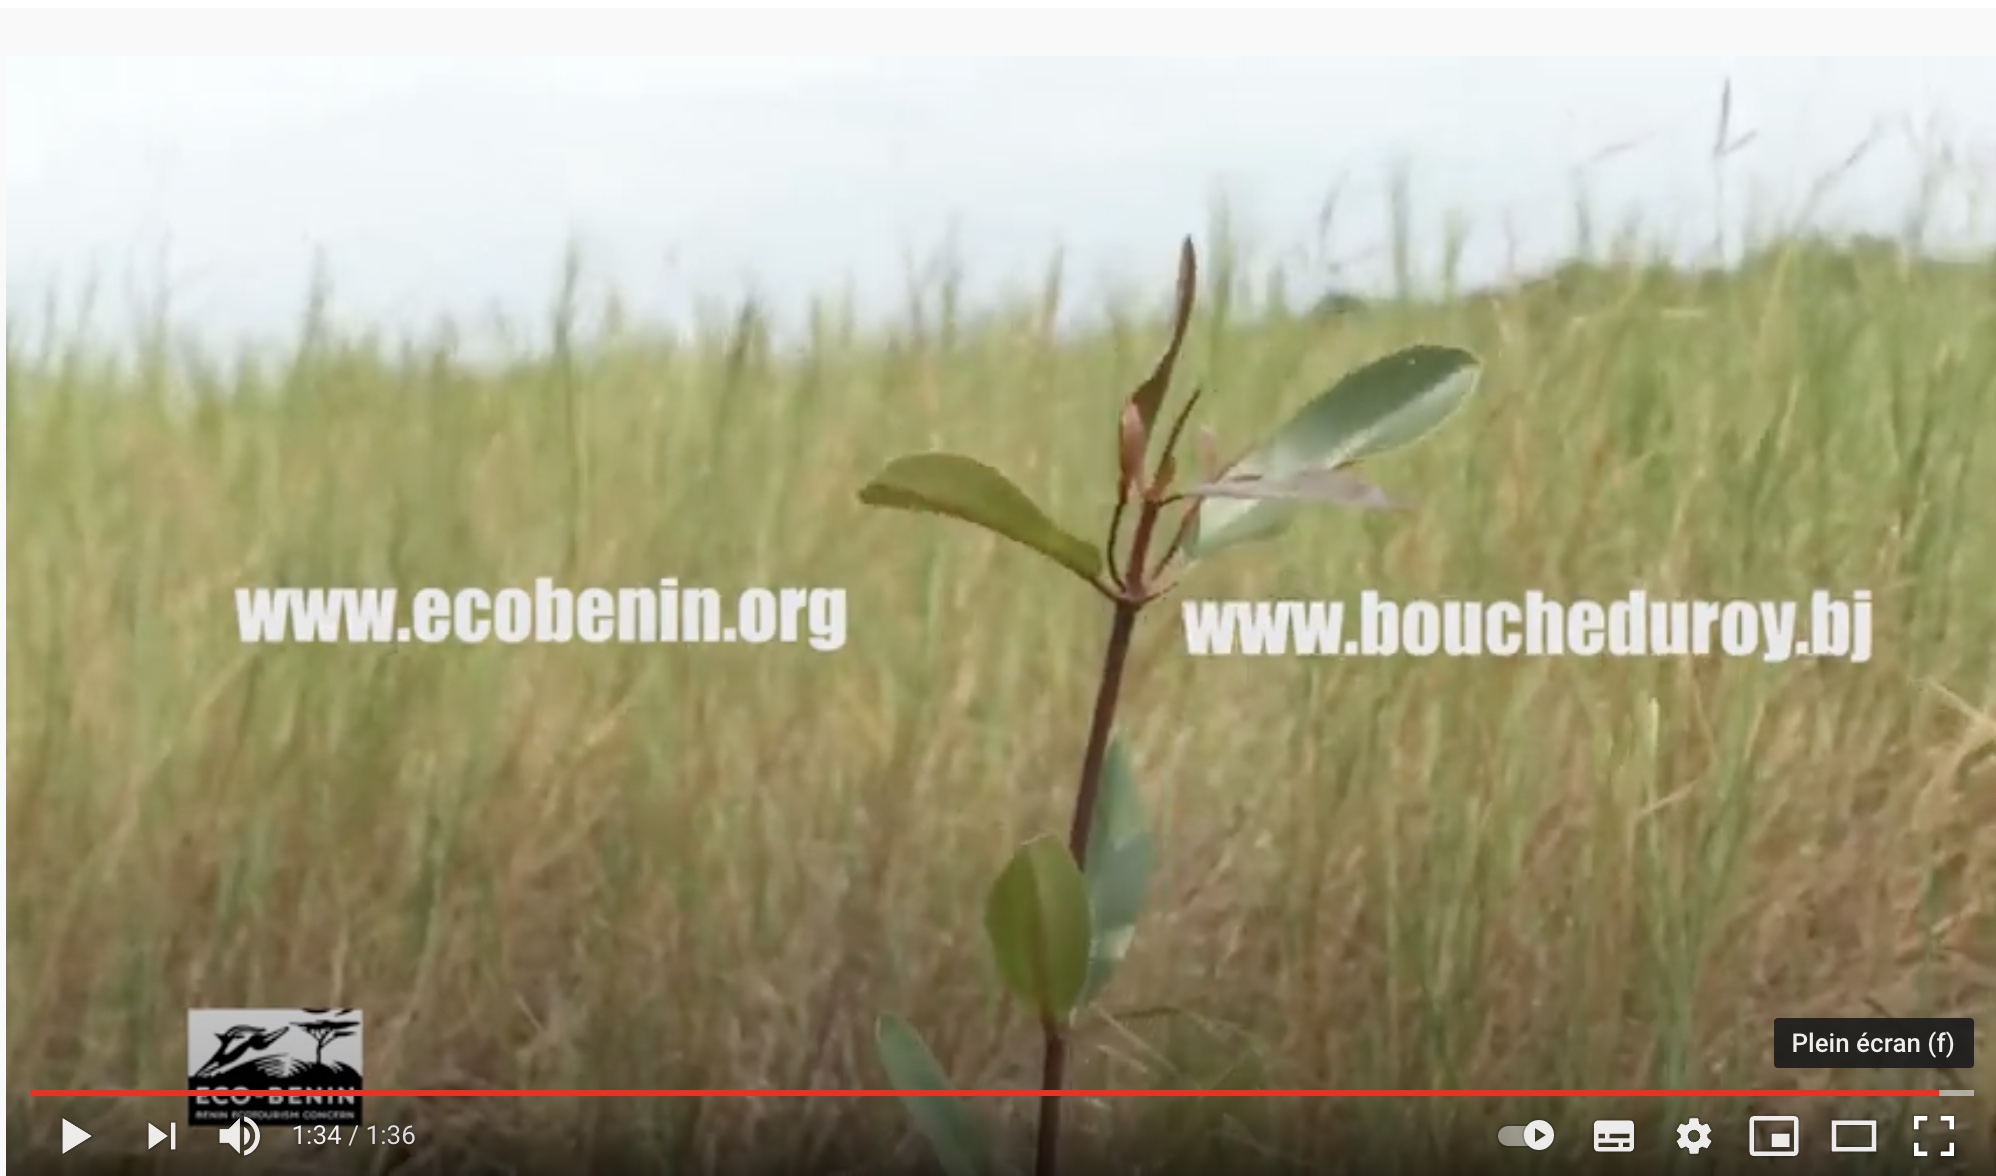 Lire la suite à propos de l’article Benin : Bilan restauration des écosystèmes mangrove dans la Bouche du Roy – ONG Eco-Benin